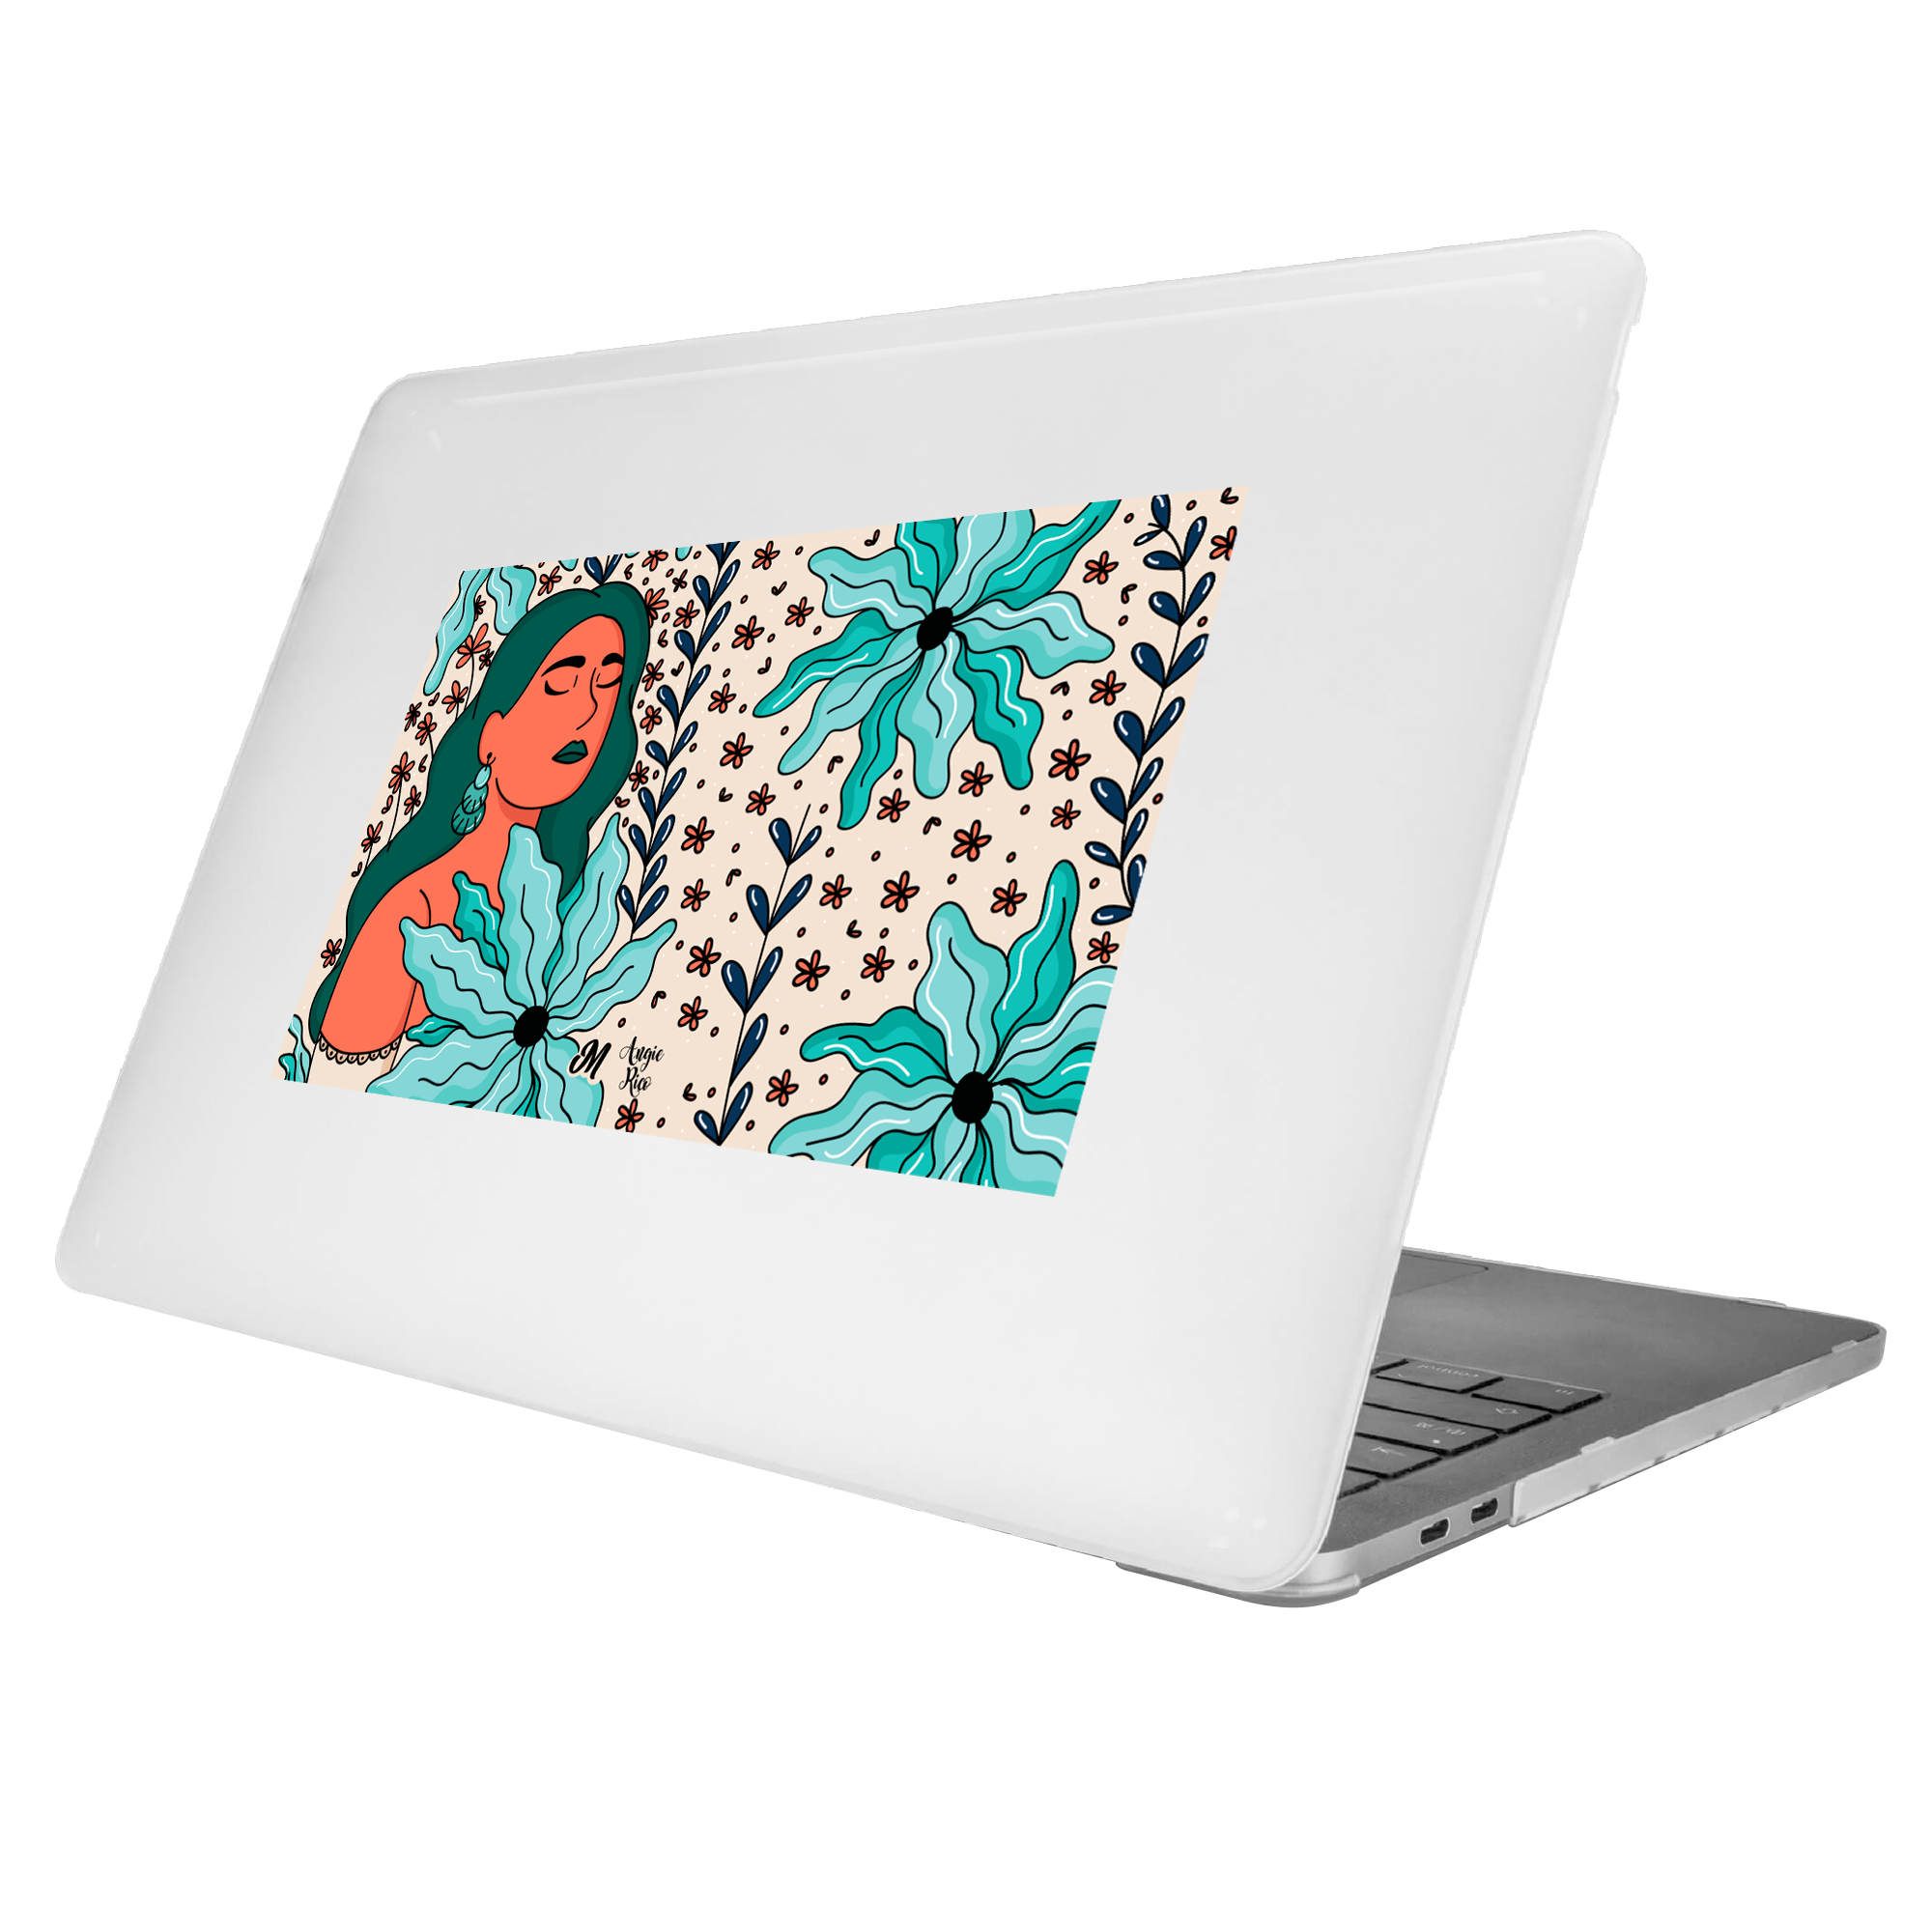 Fresca Naturaleza MacBook Case - Mandala Cases